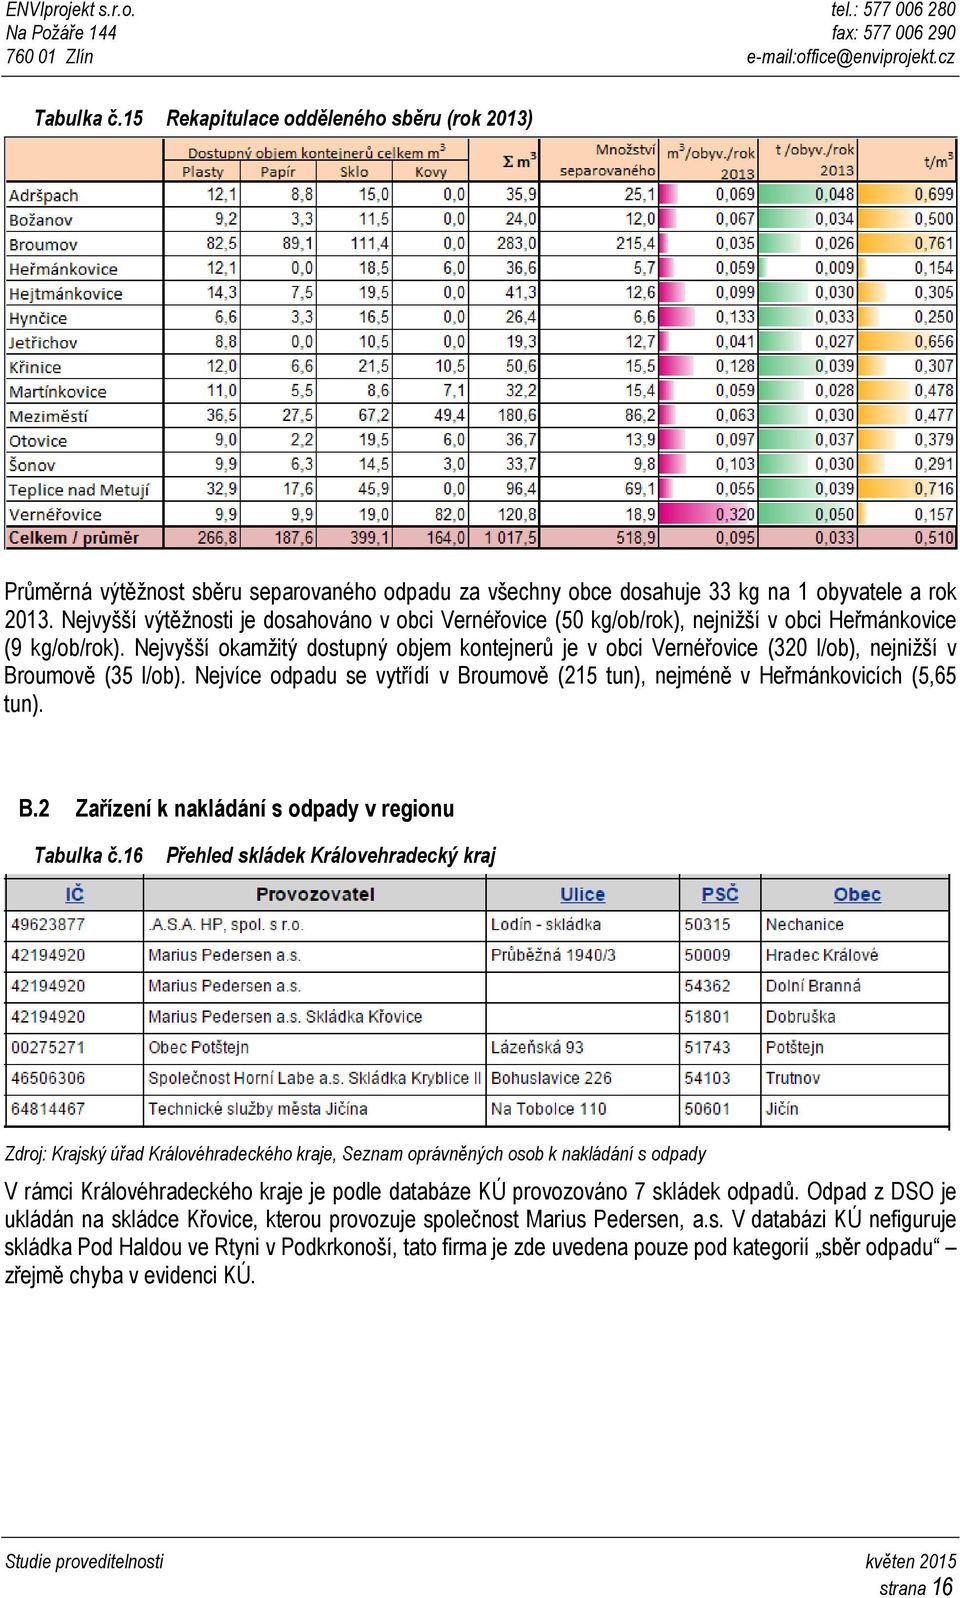 Nejvyšší okamžitý dostupný objem kontejnerů je v obci Vernéřovice (320 l/ob), nejnižší v Broumově (35 l/ob). Nejvíce odpadu se vytřídí v Broumově (215 tun), nejméně v Heřmánkovicích (5,65 tun). B.2 Zařízení k nakládání s odpady v regionu Tabulka č.